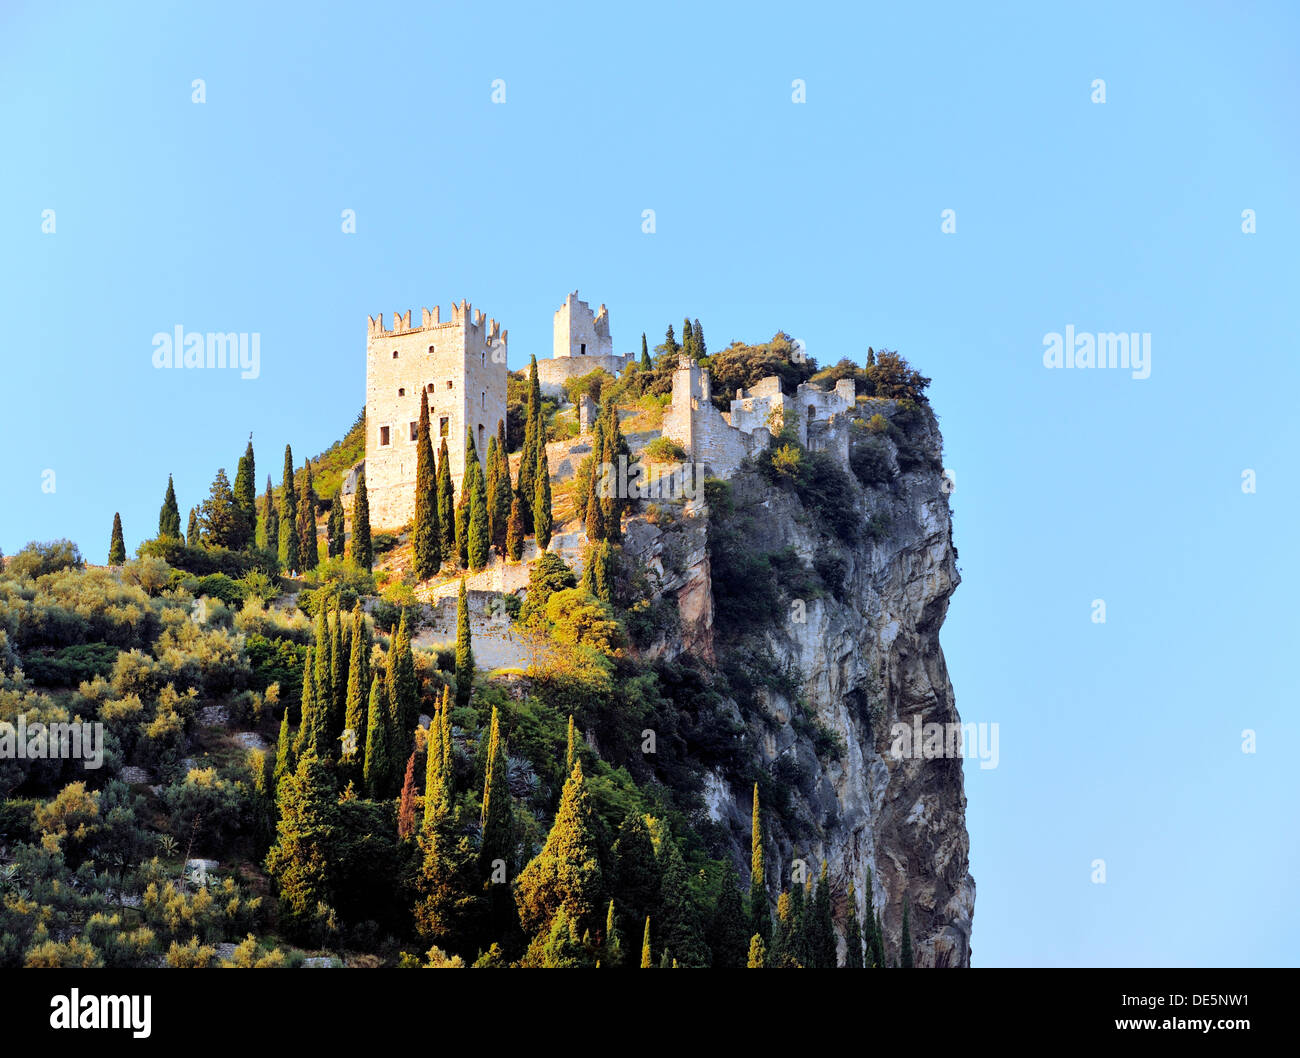 Il Castello D'Arco della collina del castello su scogliere calcaree sopra la città di Arco sul lago di Garda in Alto Adige Italia Foto Stock